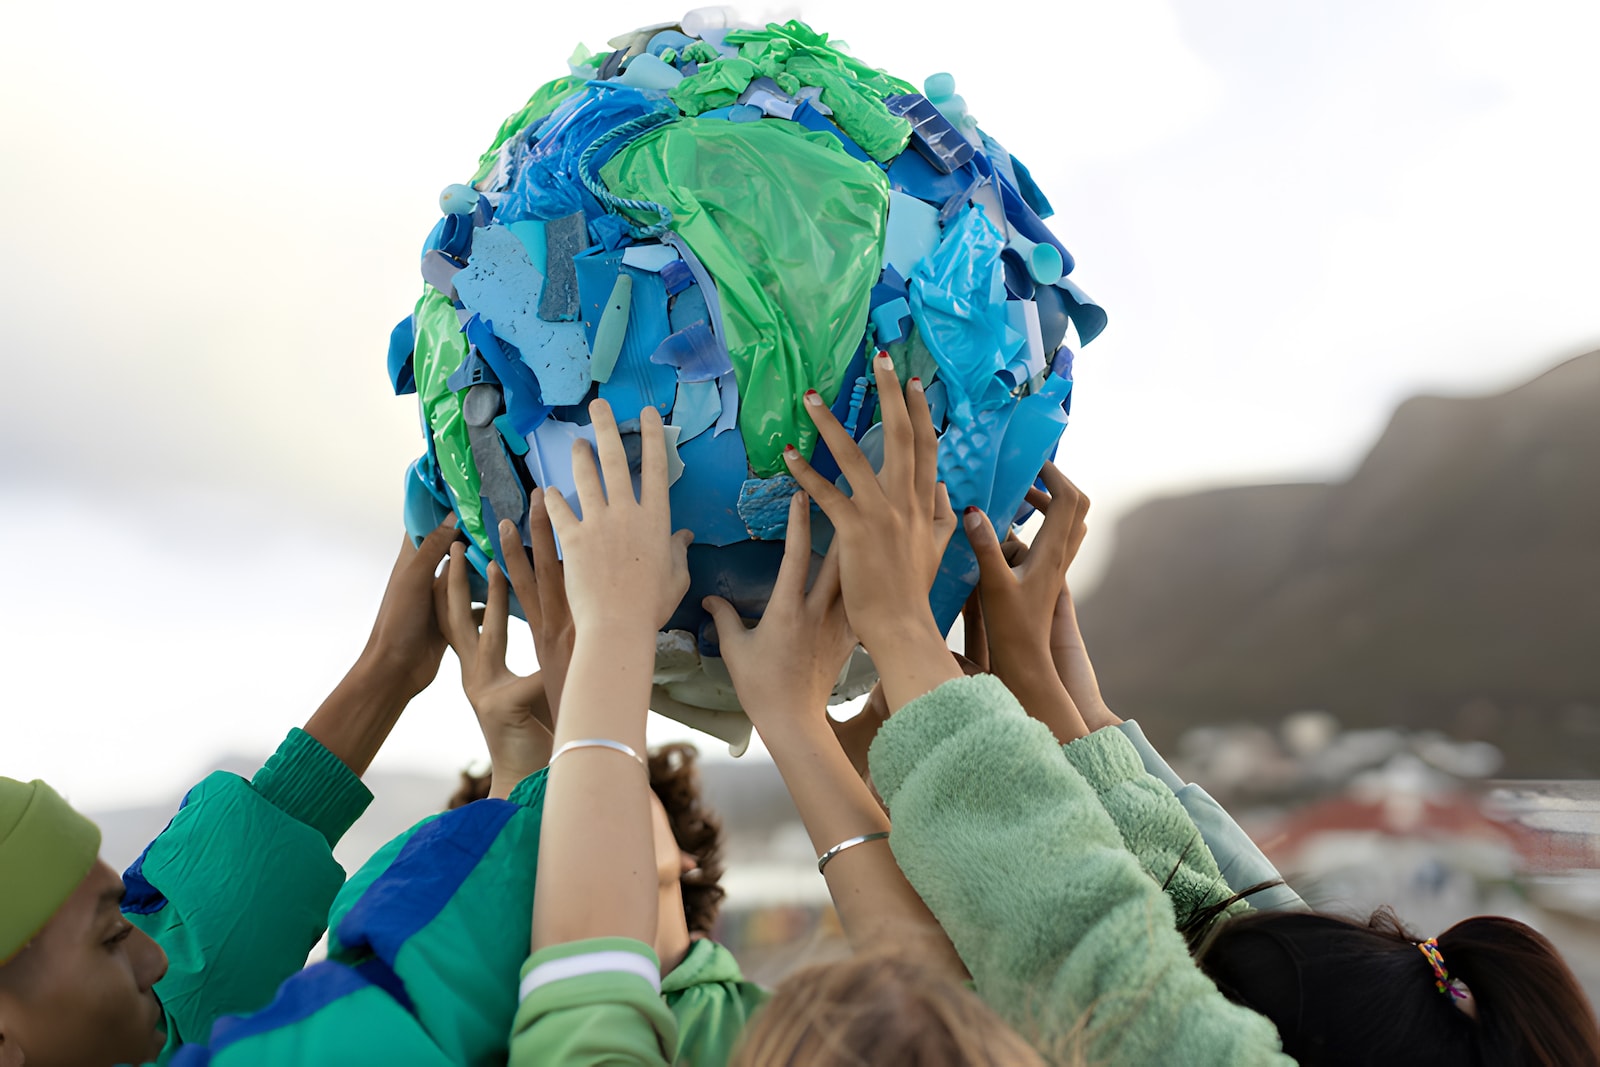 jóvenes sujetando una pelota con forma de planeta Tierra